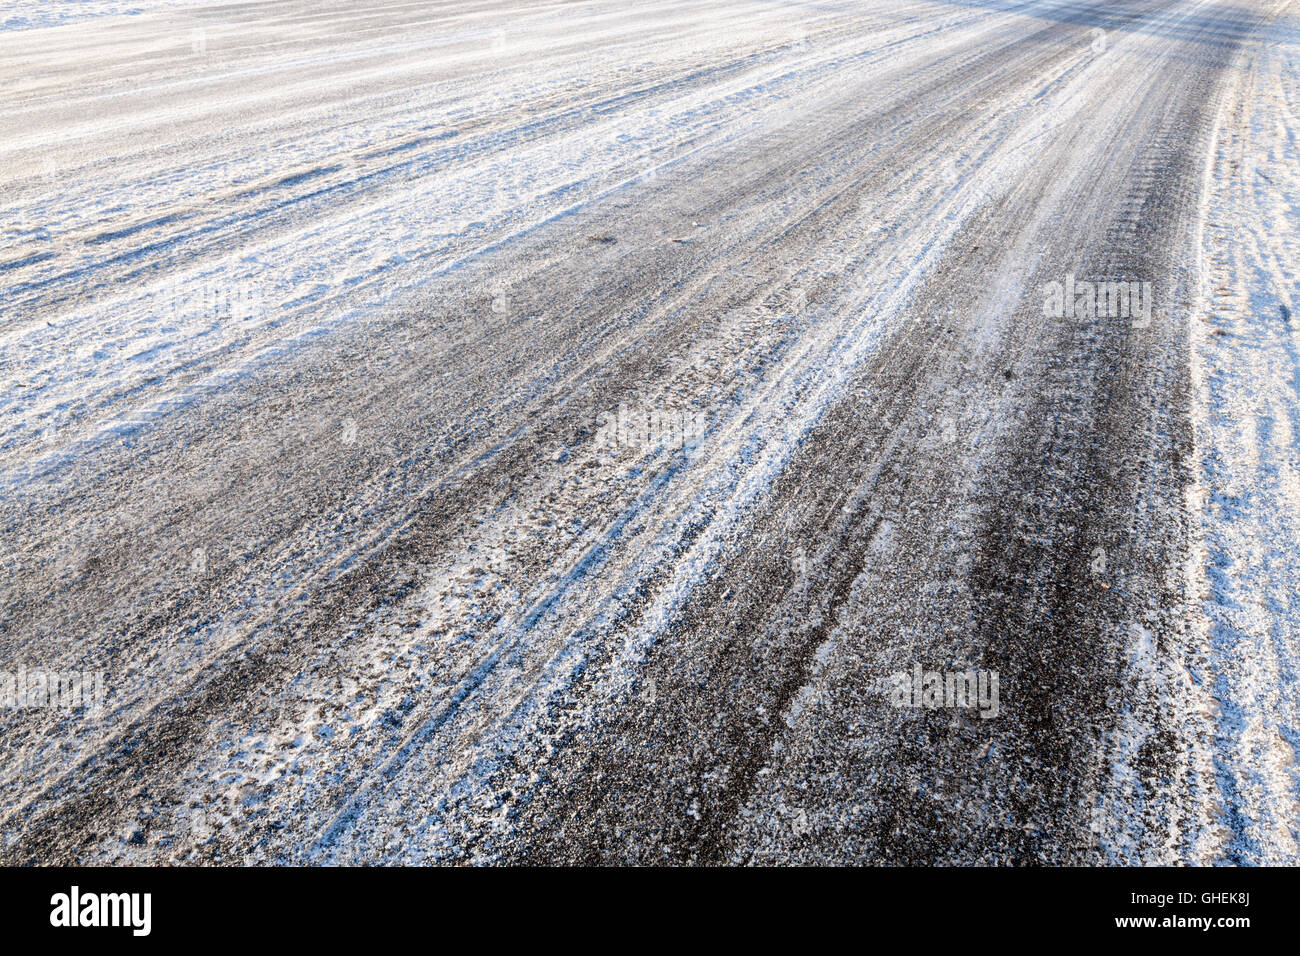 Strada ghiacciata. Tracce di pneumatici a sinistra in presenza di neve e ghiaccio sulla strada in inverno, England, Regno Unito Foto Stock